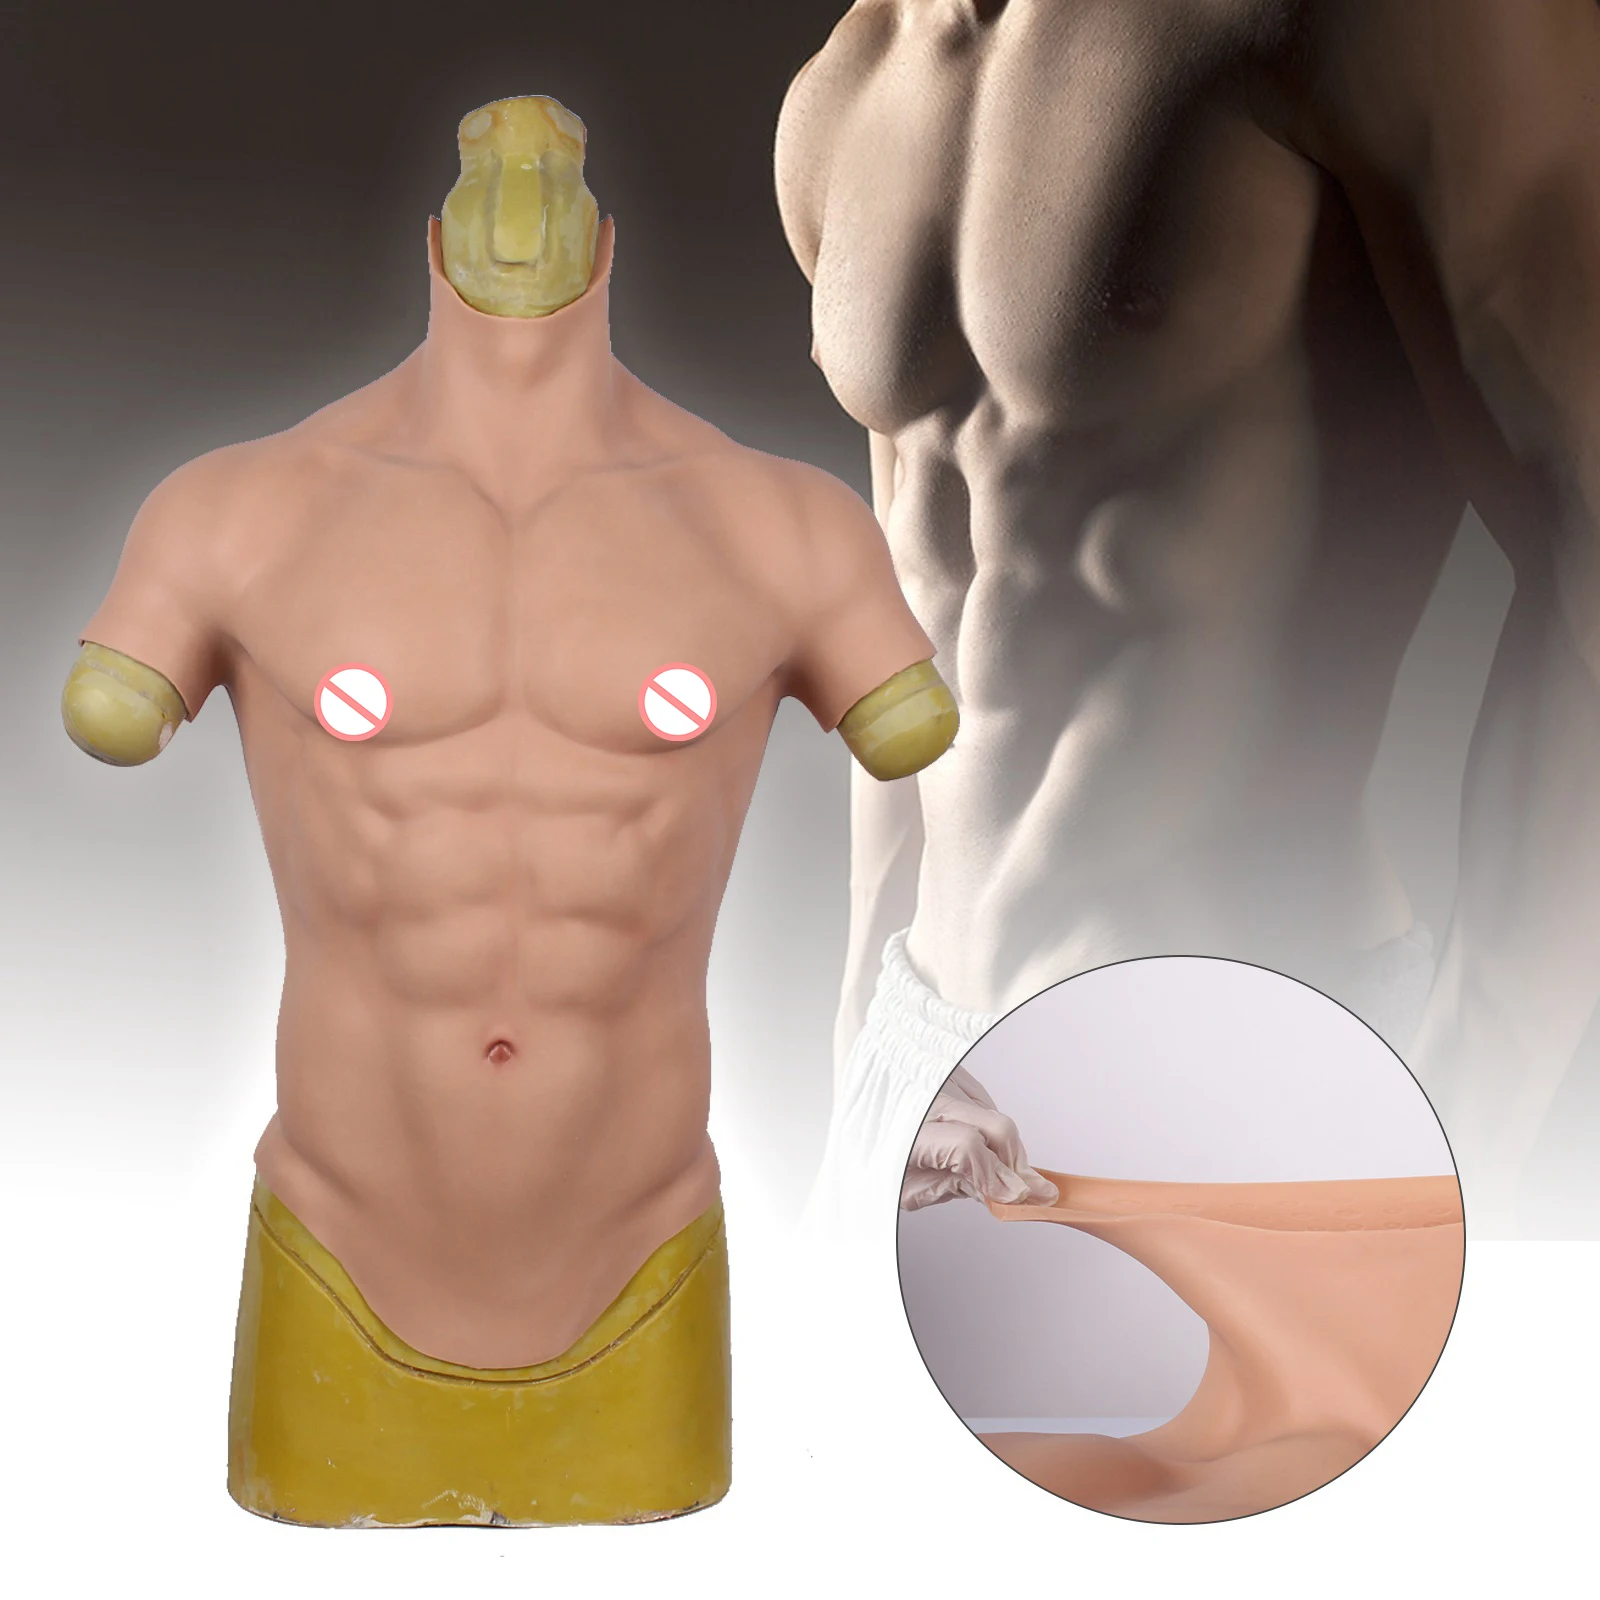 

Костюм мужской с коротким рукавом, искусственная силиконовая имитация мышц живота, для косплея, трансвеститов, мачо